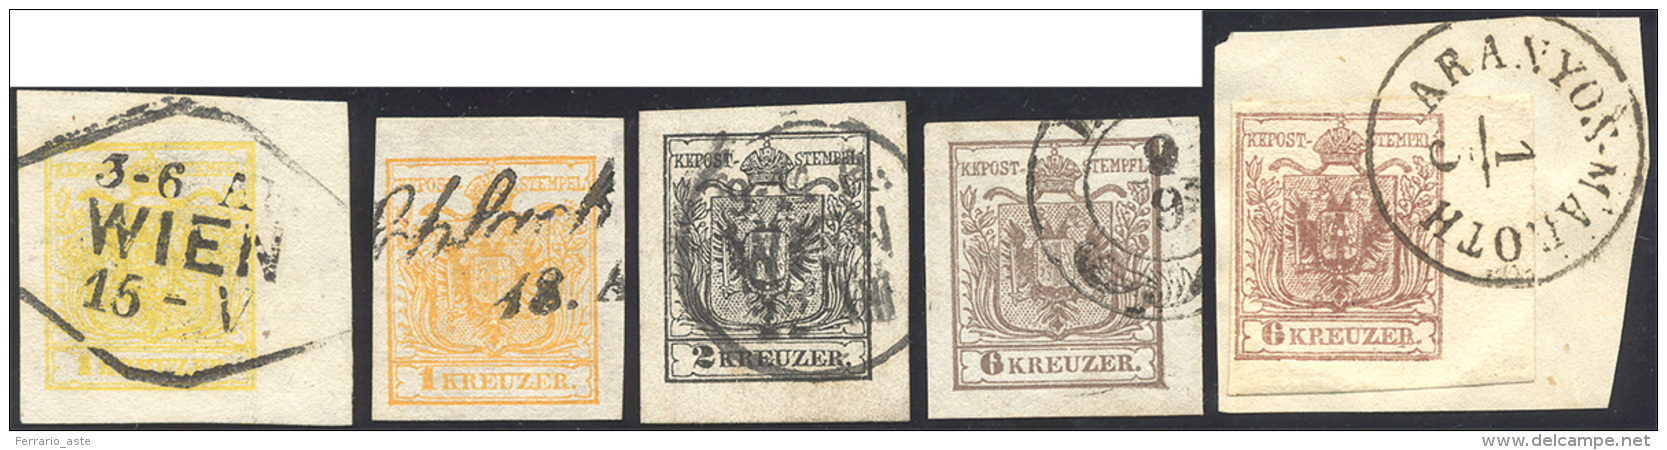 AUSTRIA 1850 - 1 Kr. Giallo, Due Esemplari, 2 Kr. Nero, 6 Kr. Bruno, Due Esemplari (1,2,4), Usati, P... - Autres - Europe